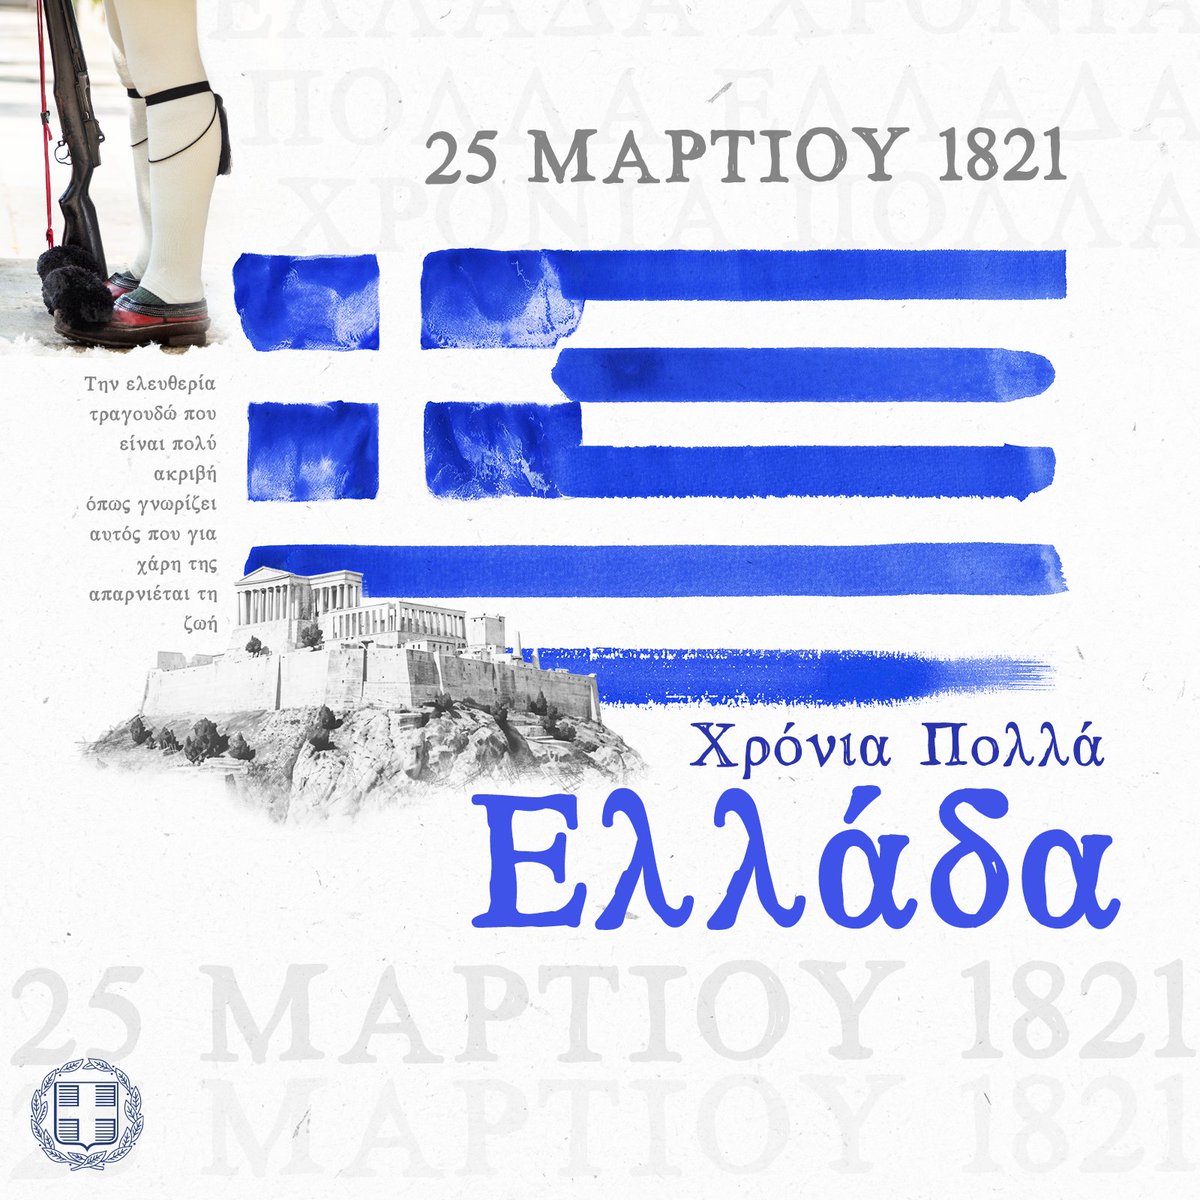 Χρόνια πολλά Ελλάδα! Χρόνια πολλά σε όλες τις Ελληνίδες και όλους τους Έλληνες απανταχού του κόσμου! 🇬🇷